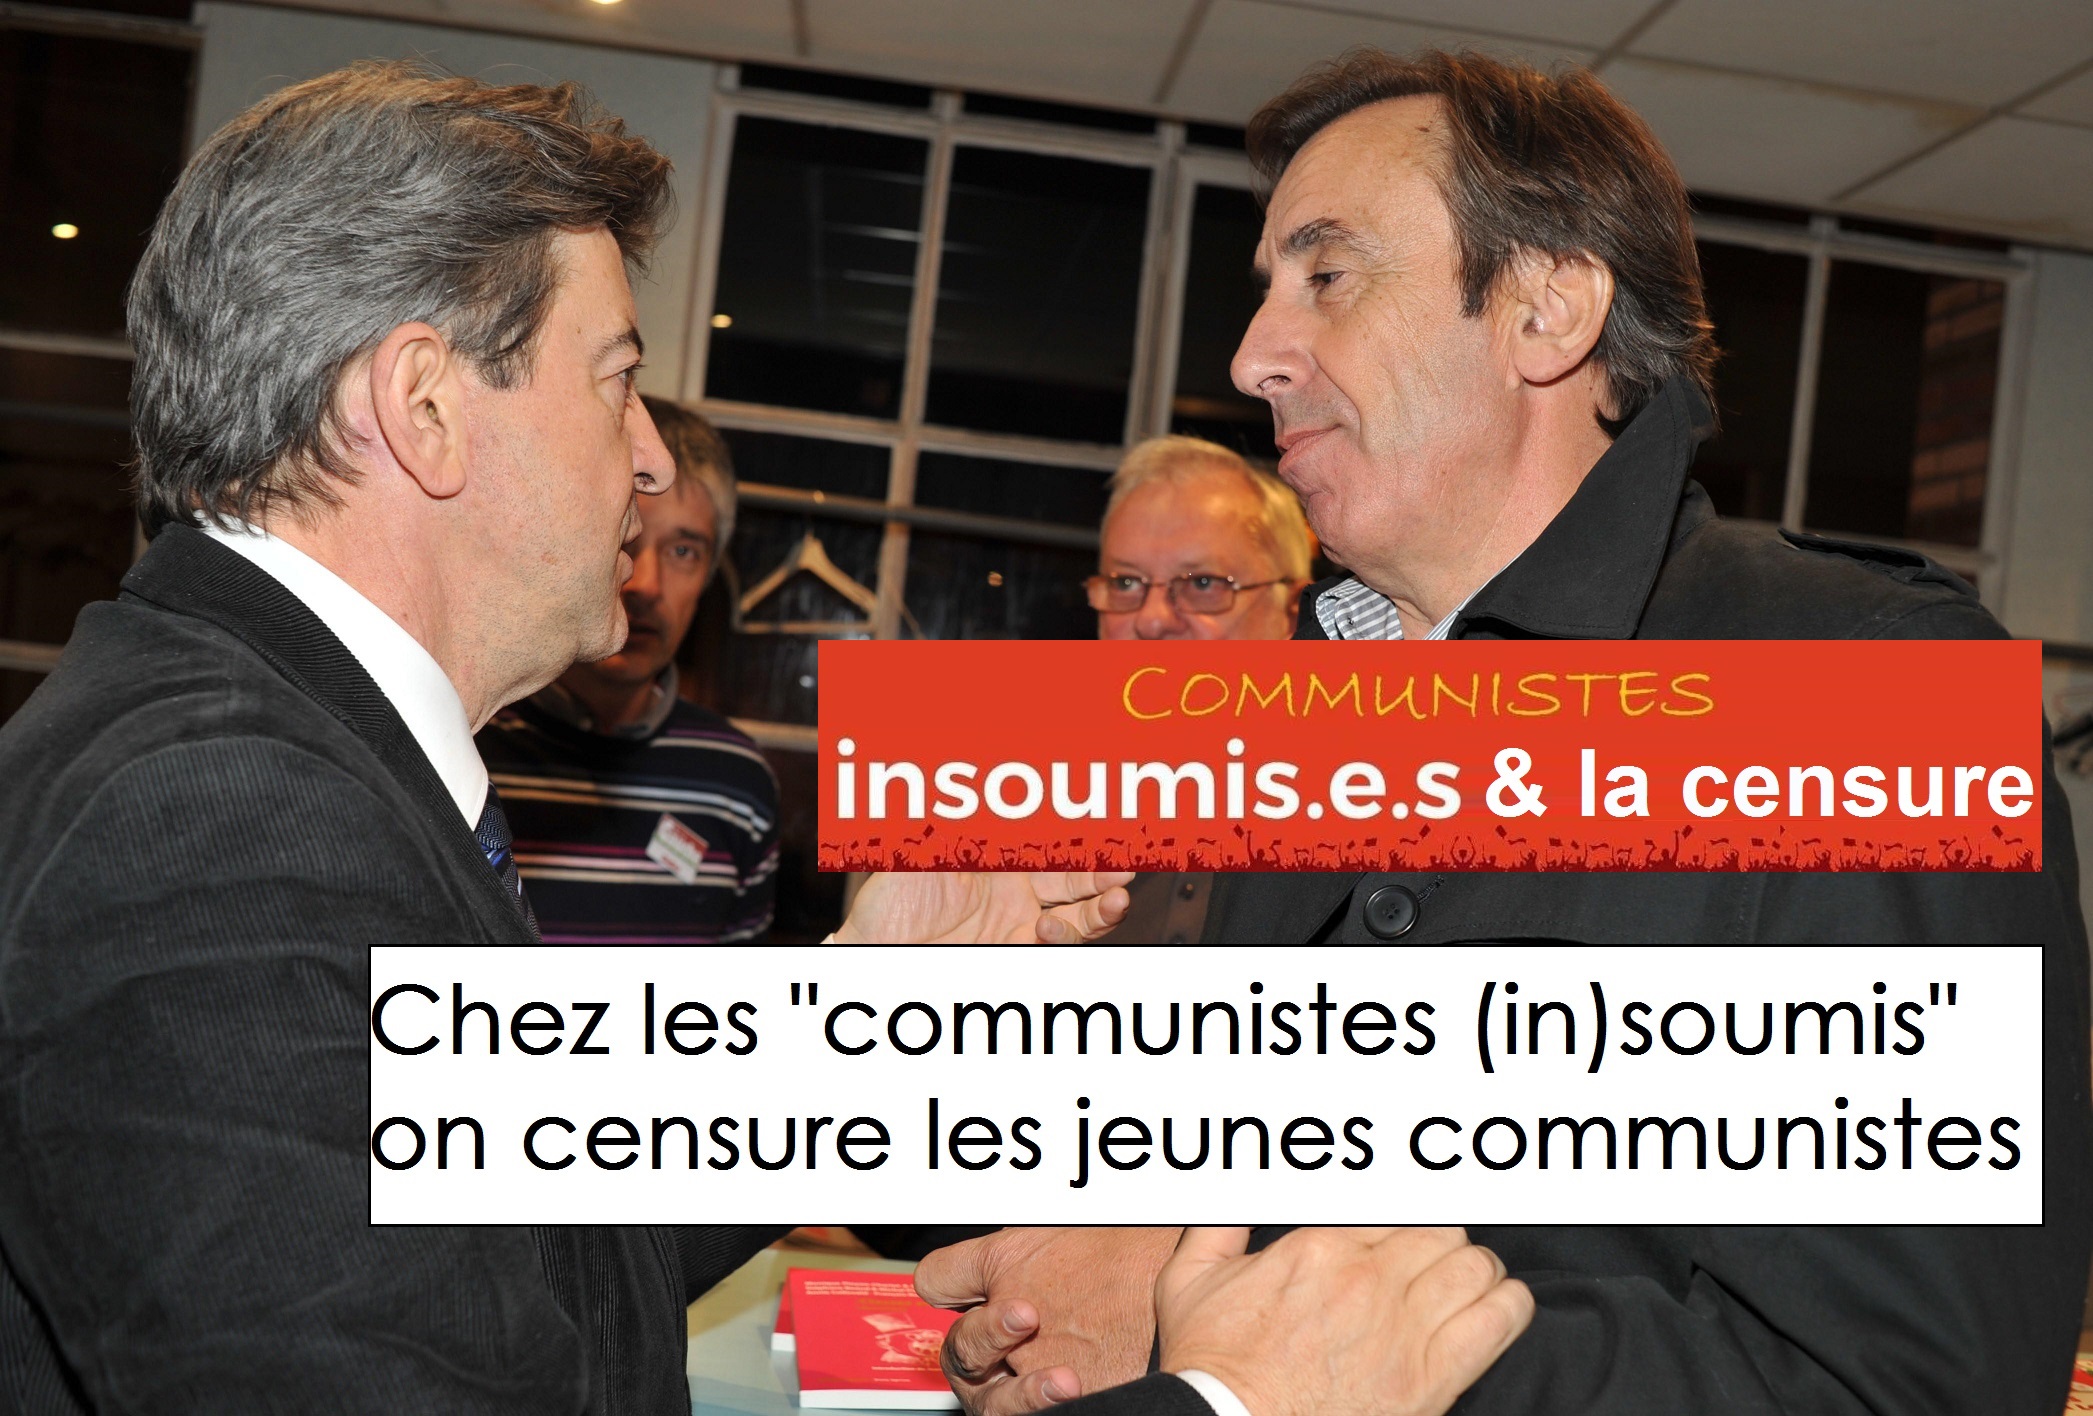 Le "communiste (in)soumis", Christian Audouin, censure les jeunes communistes dans le journal L'Echo